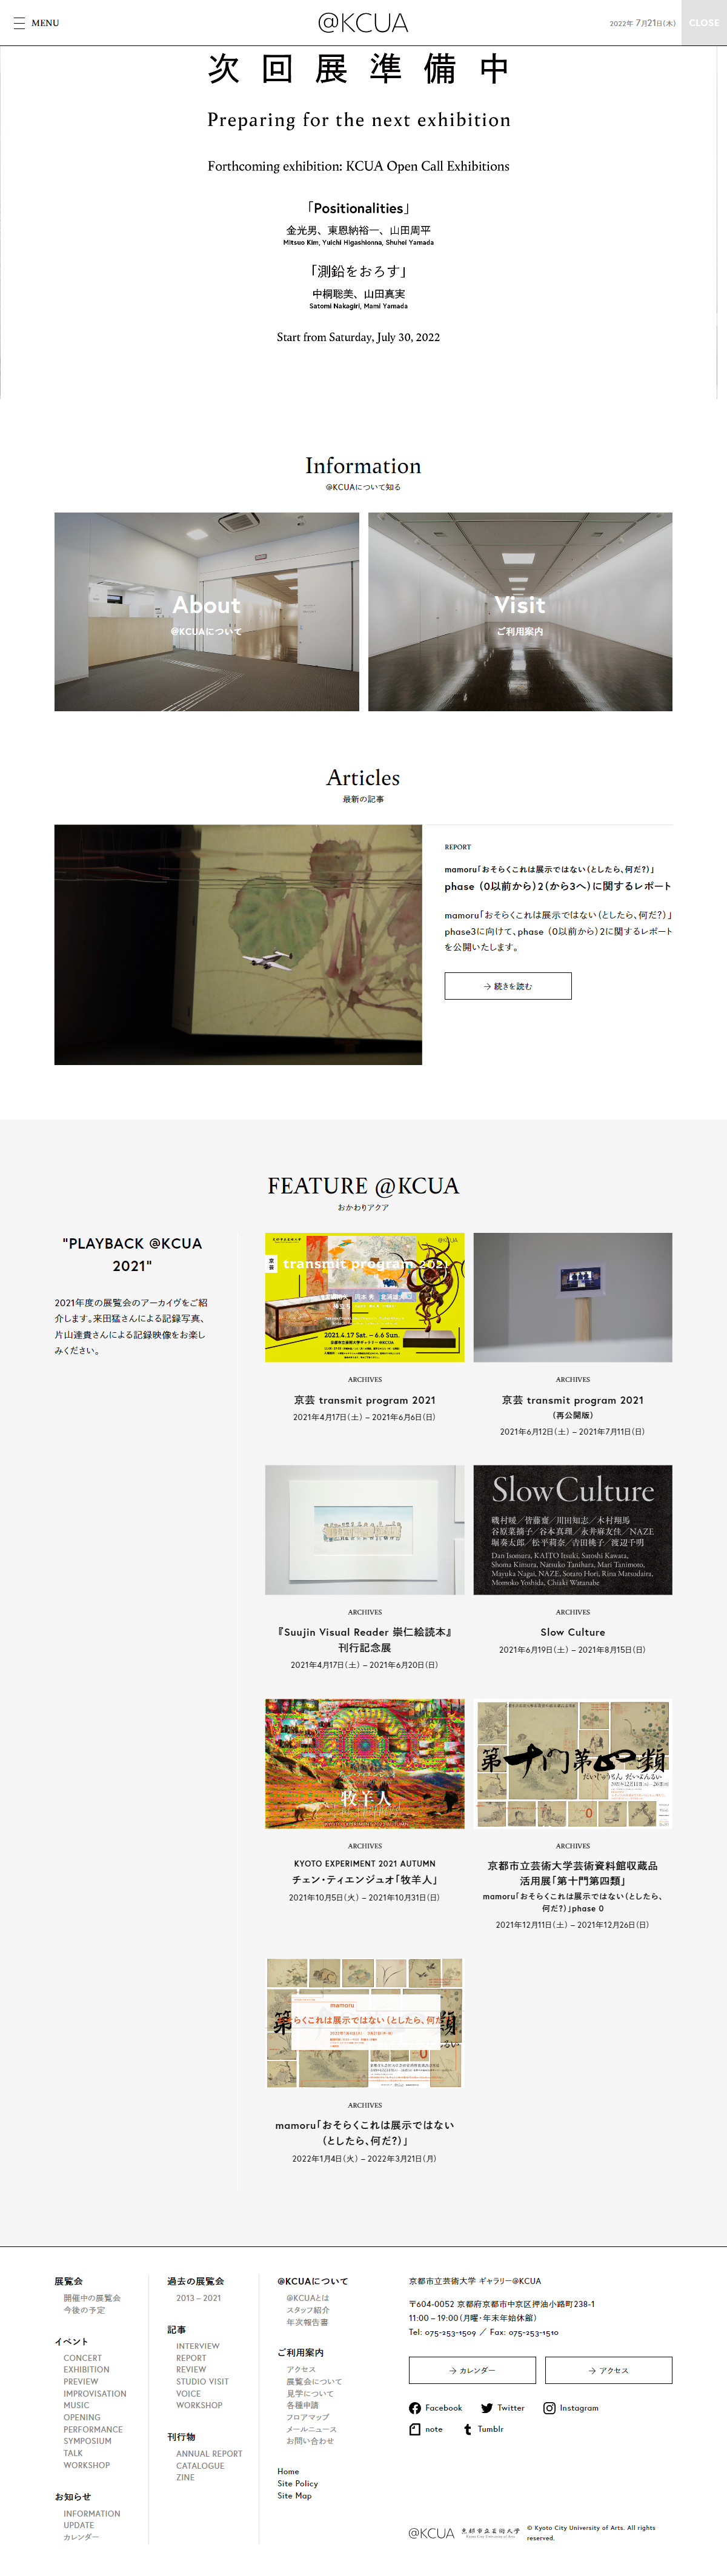 アート・文化・音楽 ホームページ制作 WEBデザイン参考ギャラリー 京都市立芸術大学ギャラリー@KCUA